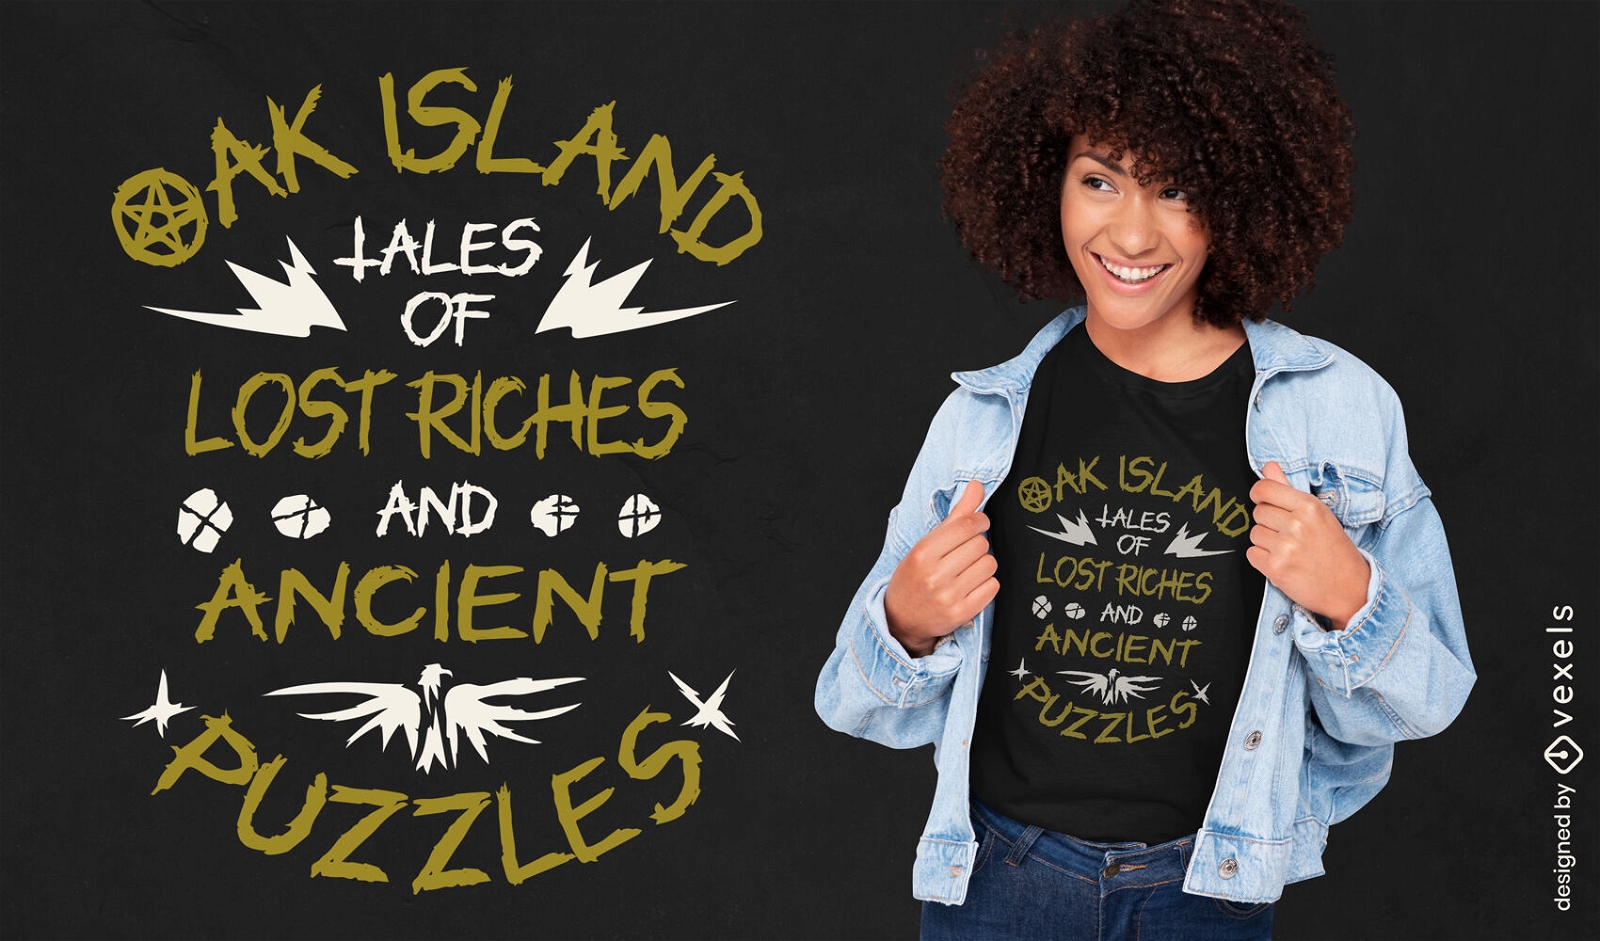 Oak Island valoriza o design de camisetas com quebra-cabeças antigos